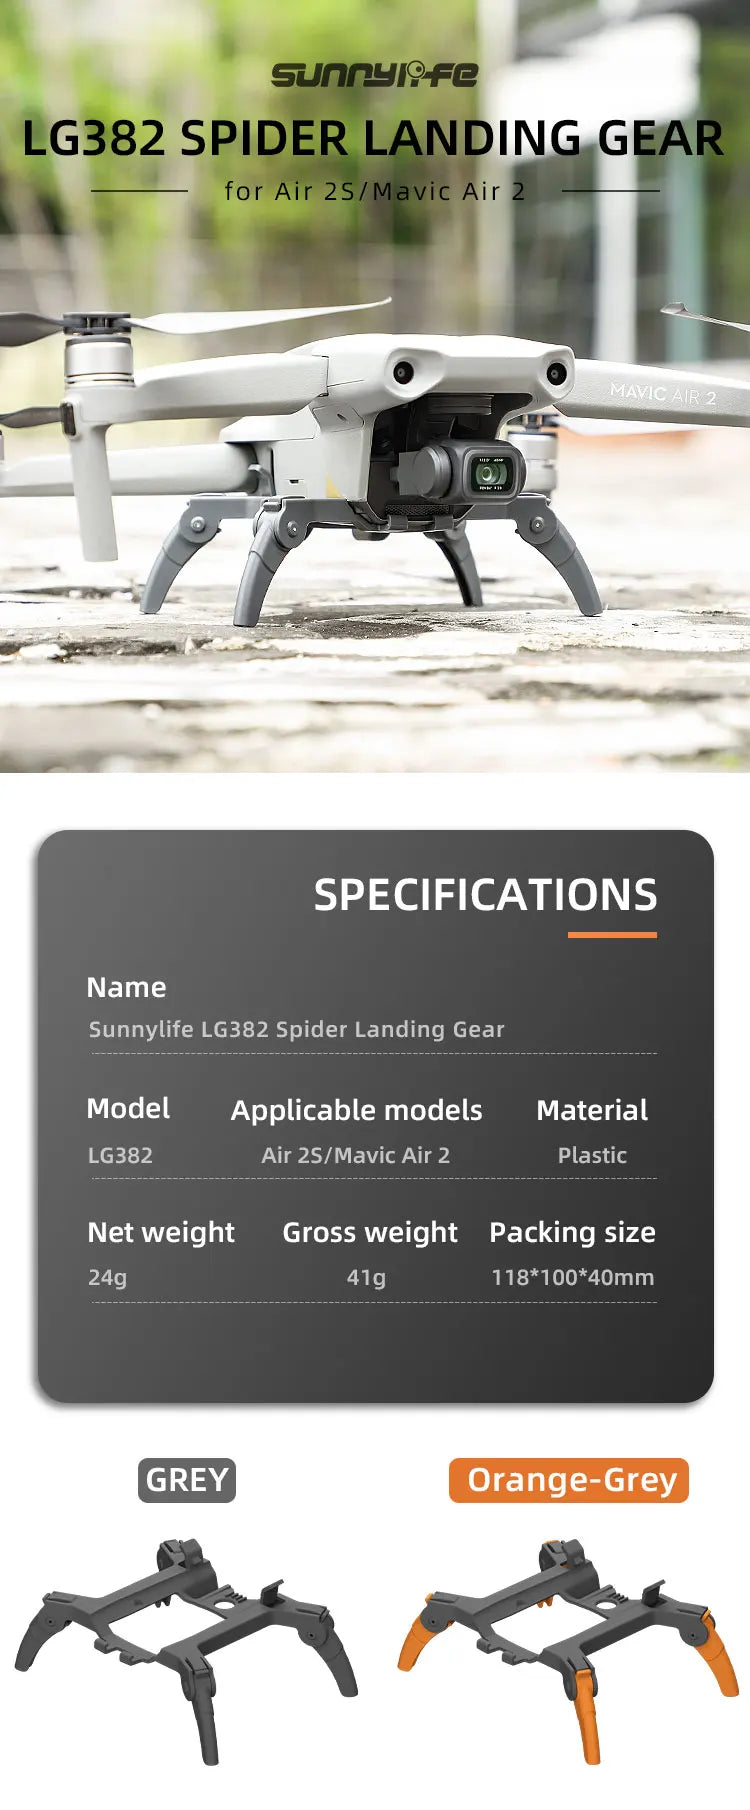 Sunnylife Lg382 Spider Landing Gear for Air 25/Mavic Air 2